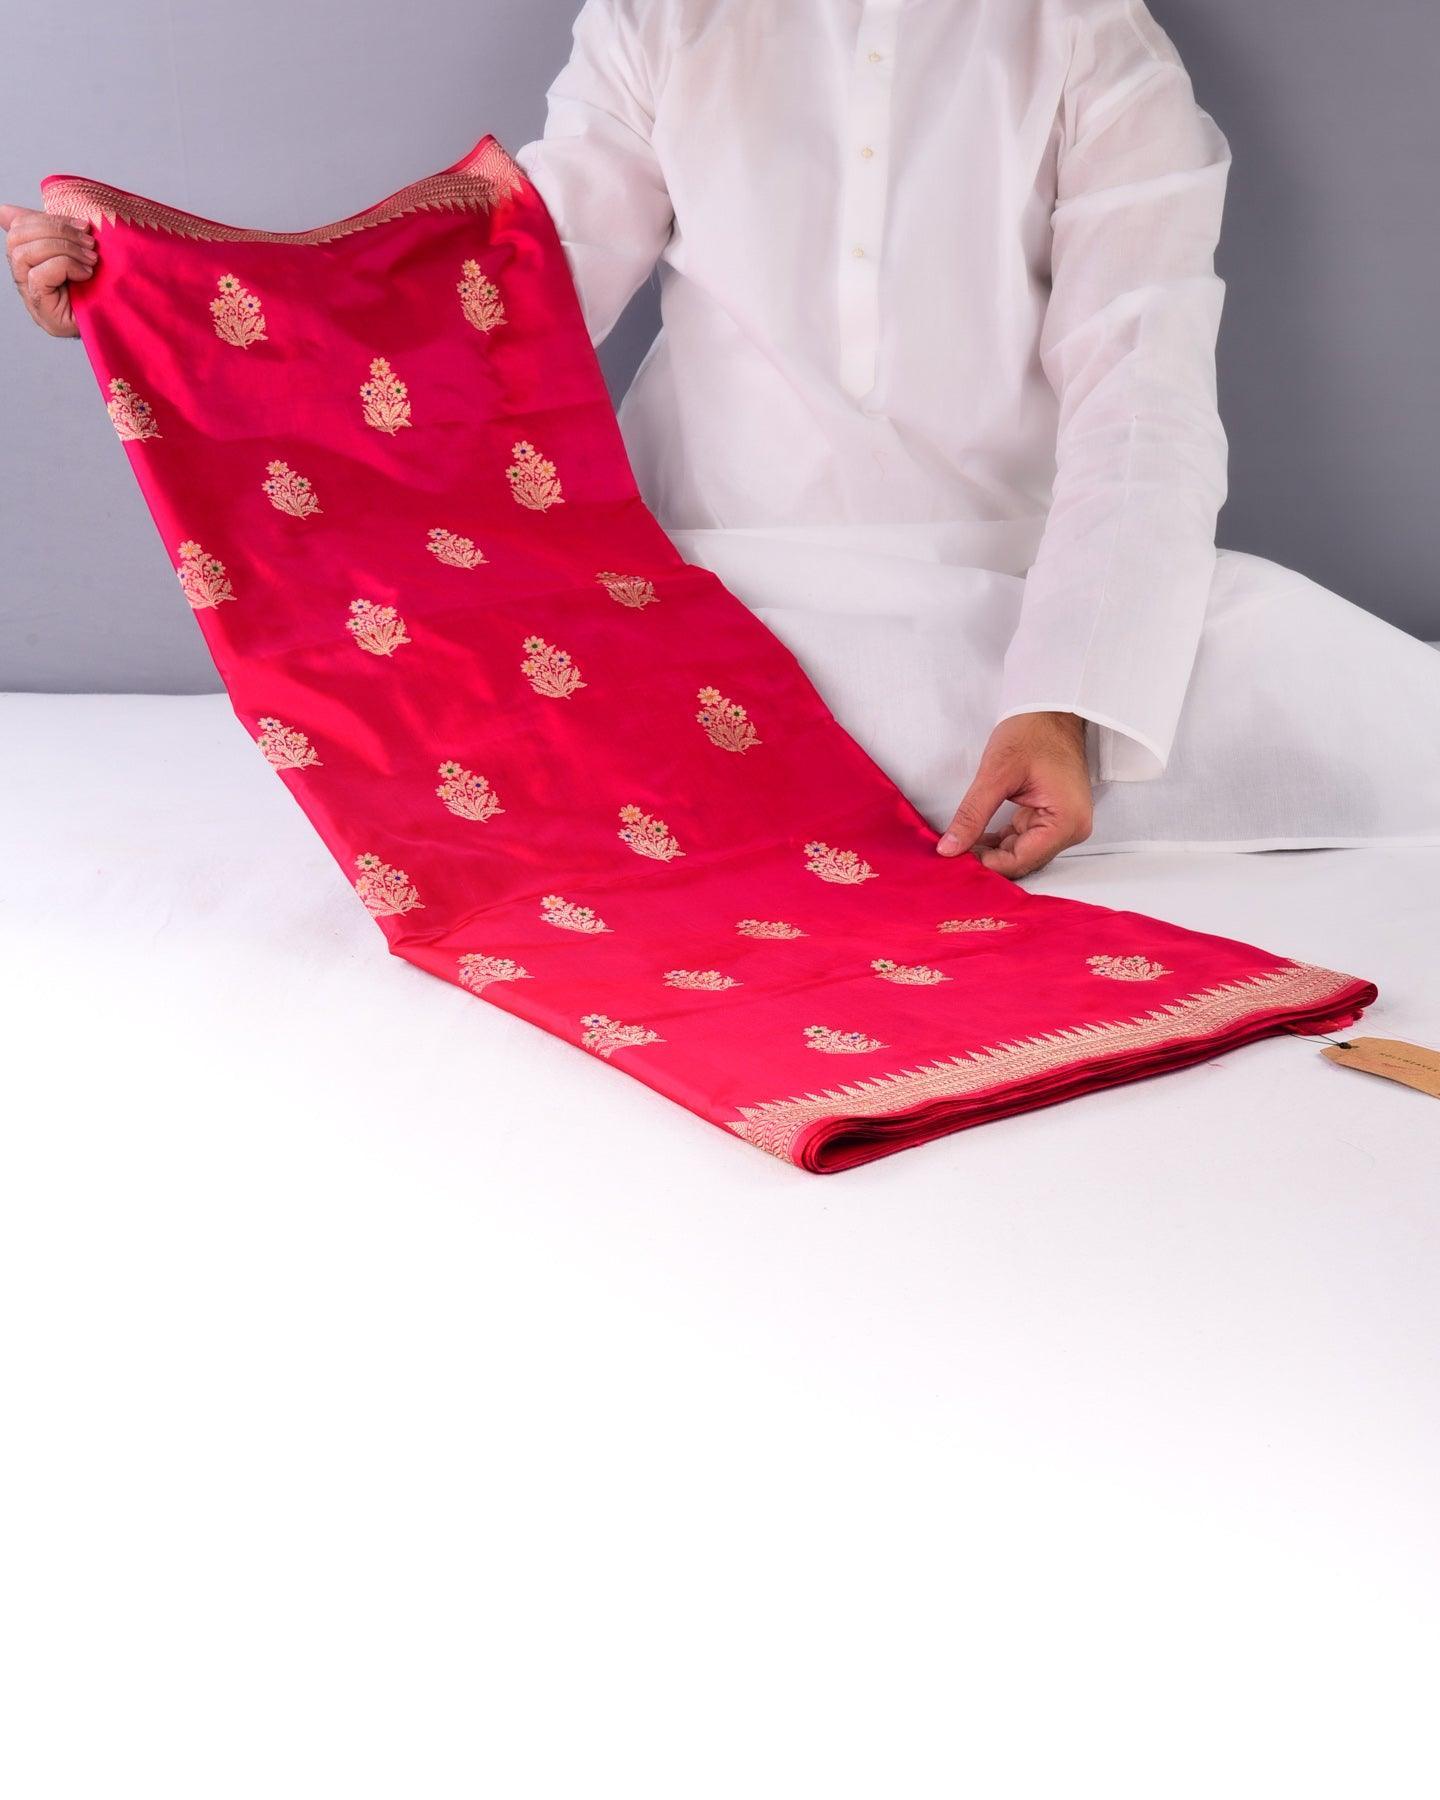 Shot Pink-Red Banarasi Tehra Meena Kadhuan Brocade Handwoven Katan Silk Saree - By HolyWeaves, Benares